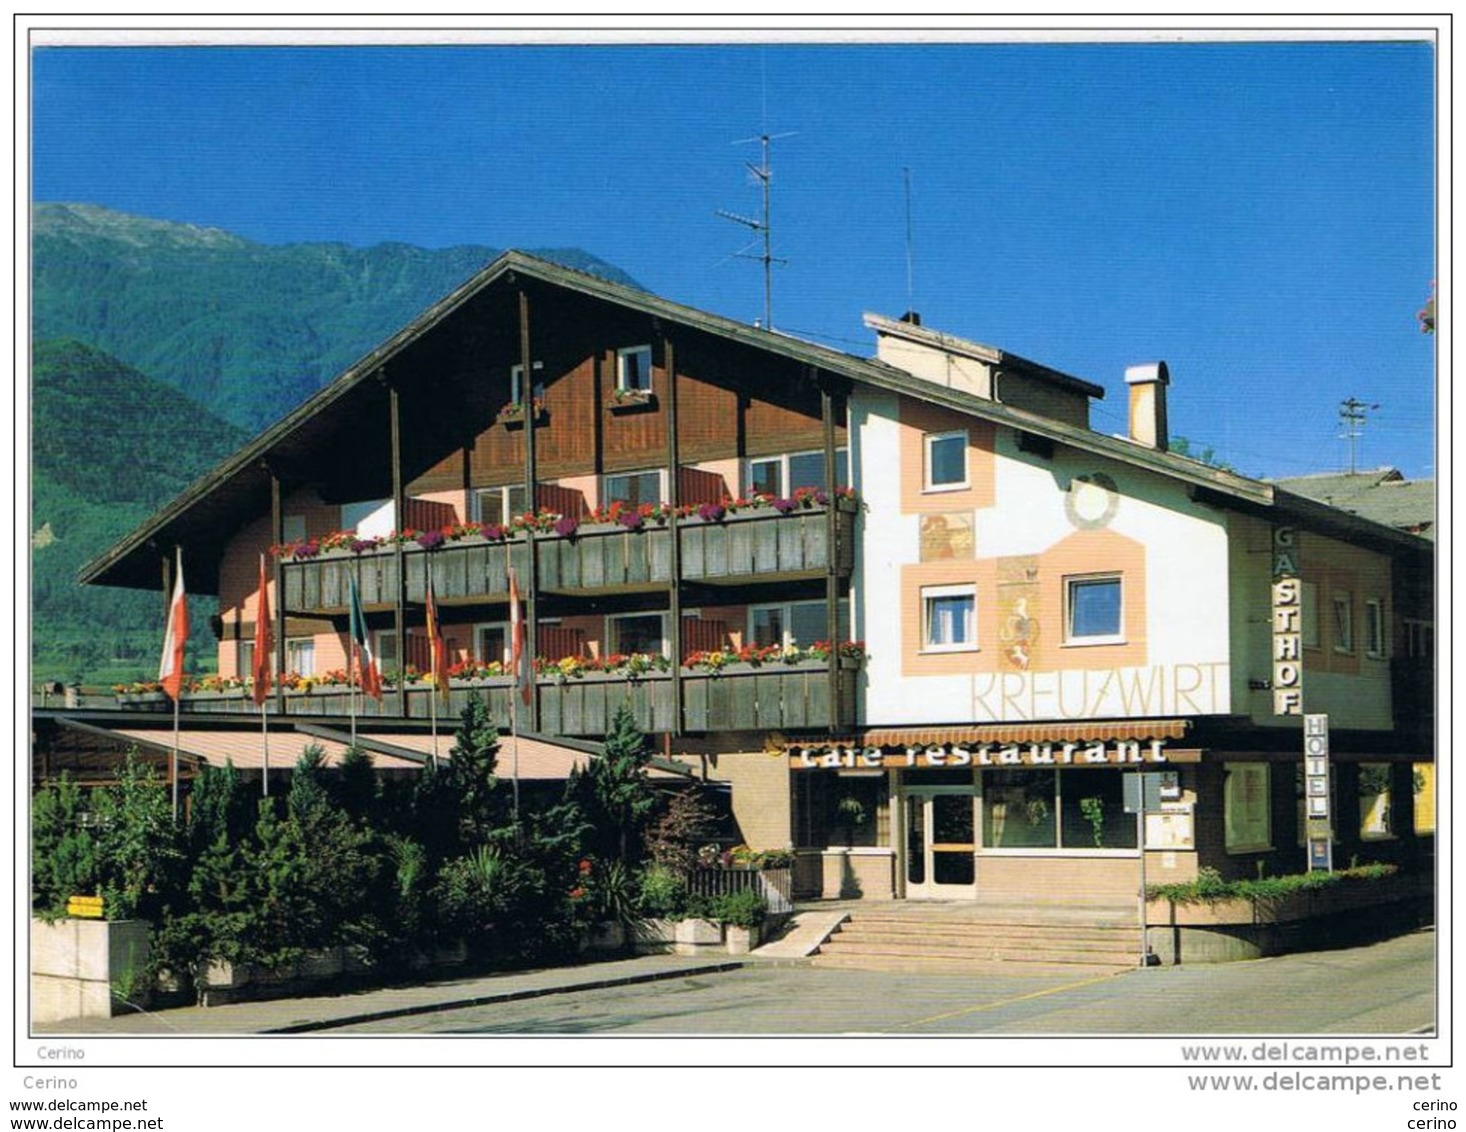 NATURNO (BZ):   HOTEL  KREUZWIRT  -  PER  LA  SVIZZERA  -  FG - Hoteles & Restaurantes